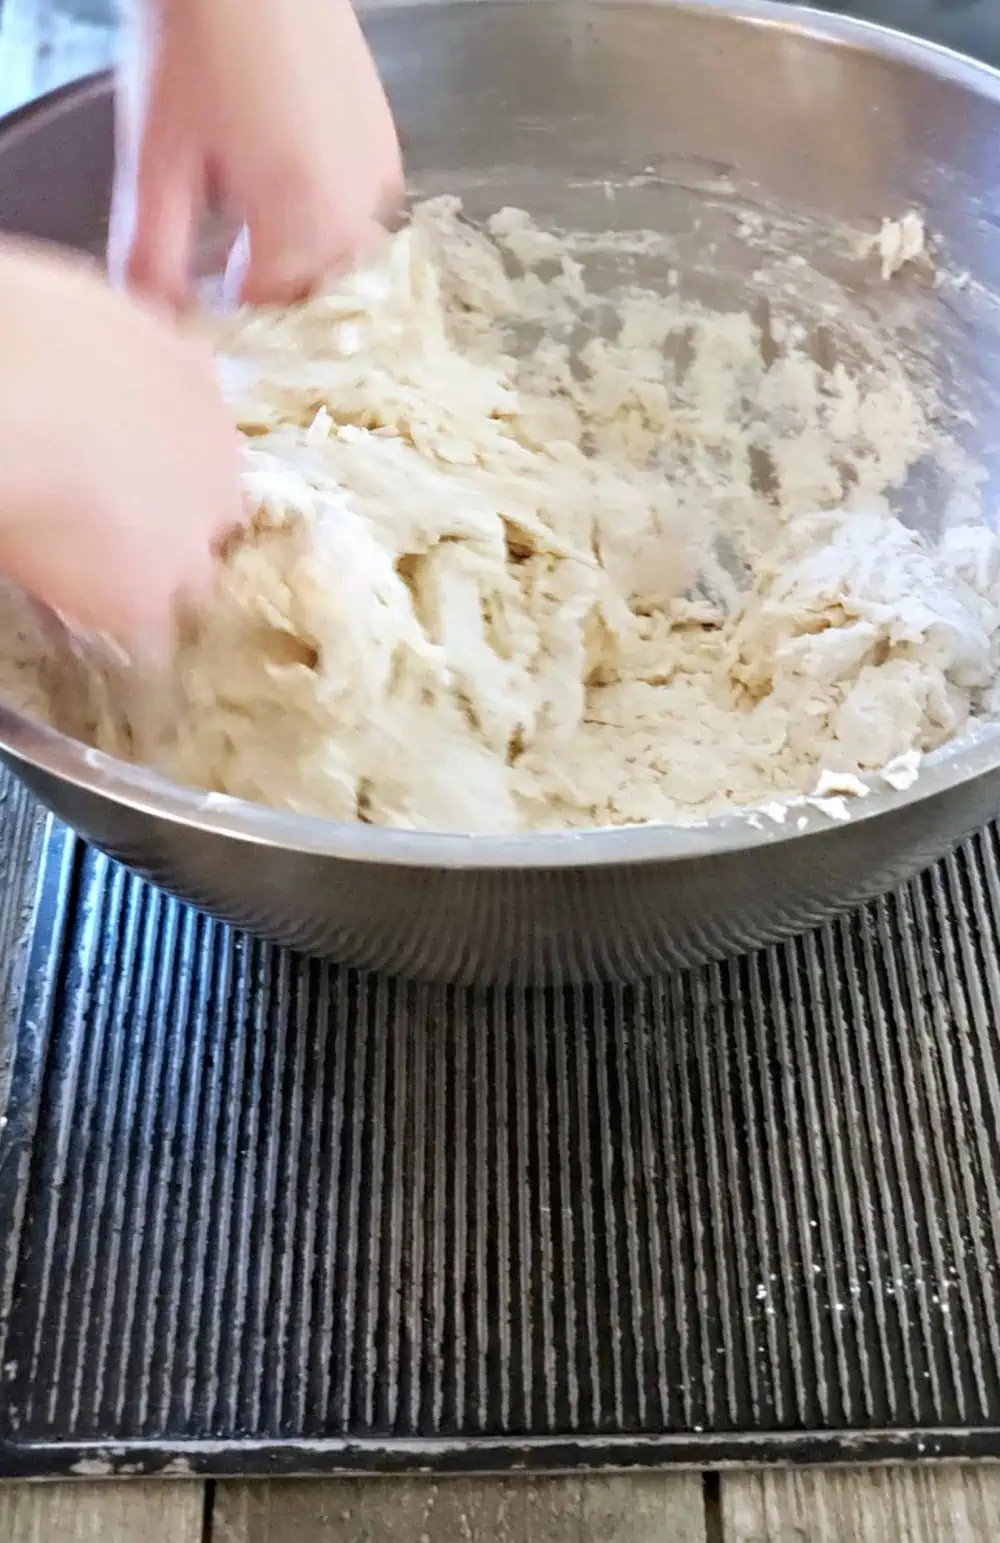 Mix flour to make dough for homemade bread.